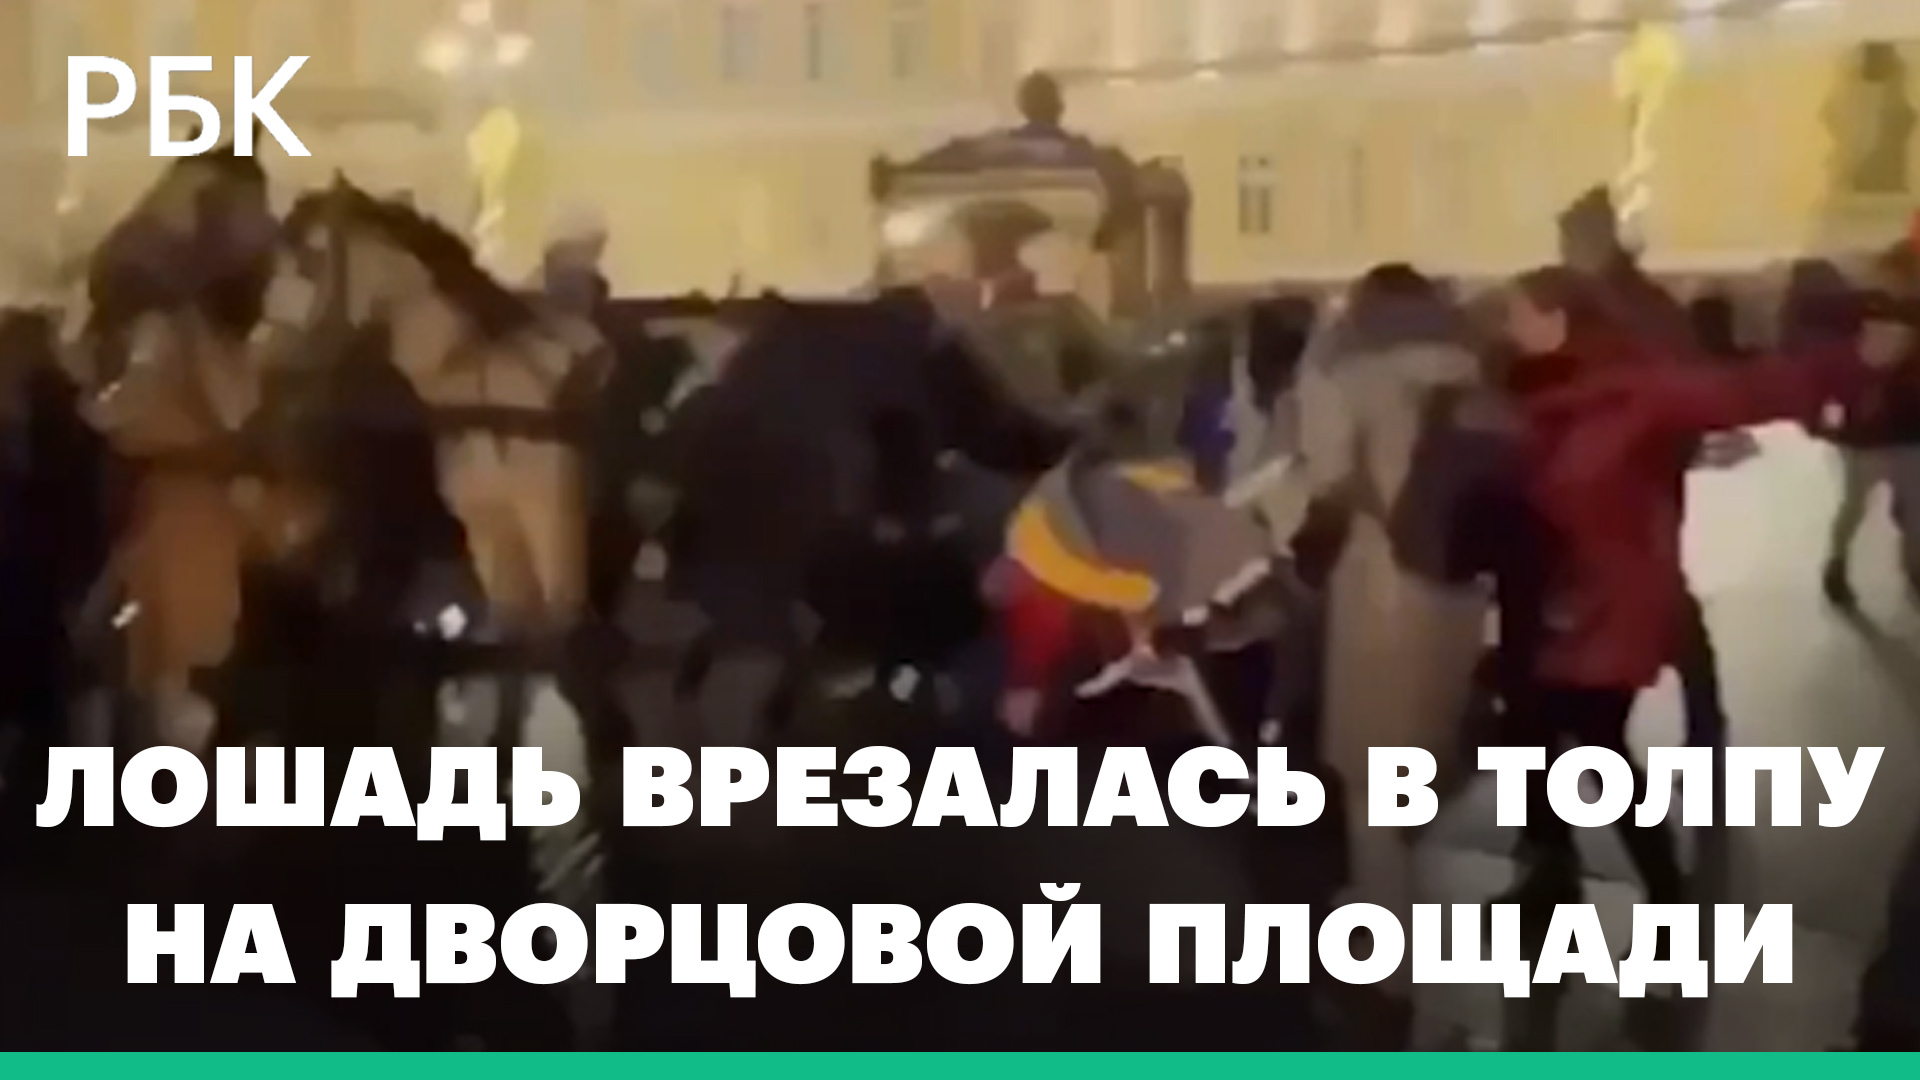 Двое детей пострадали при побеге лошади на Дворцовой площади в Петербурге